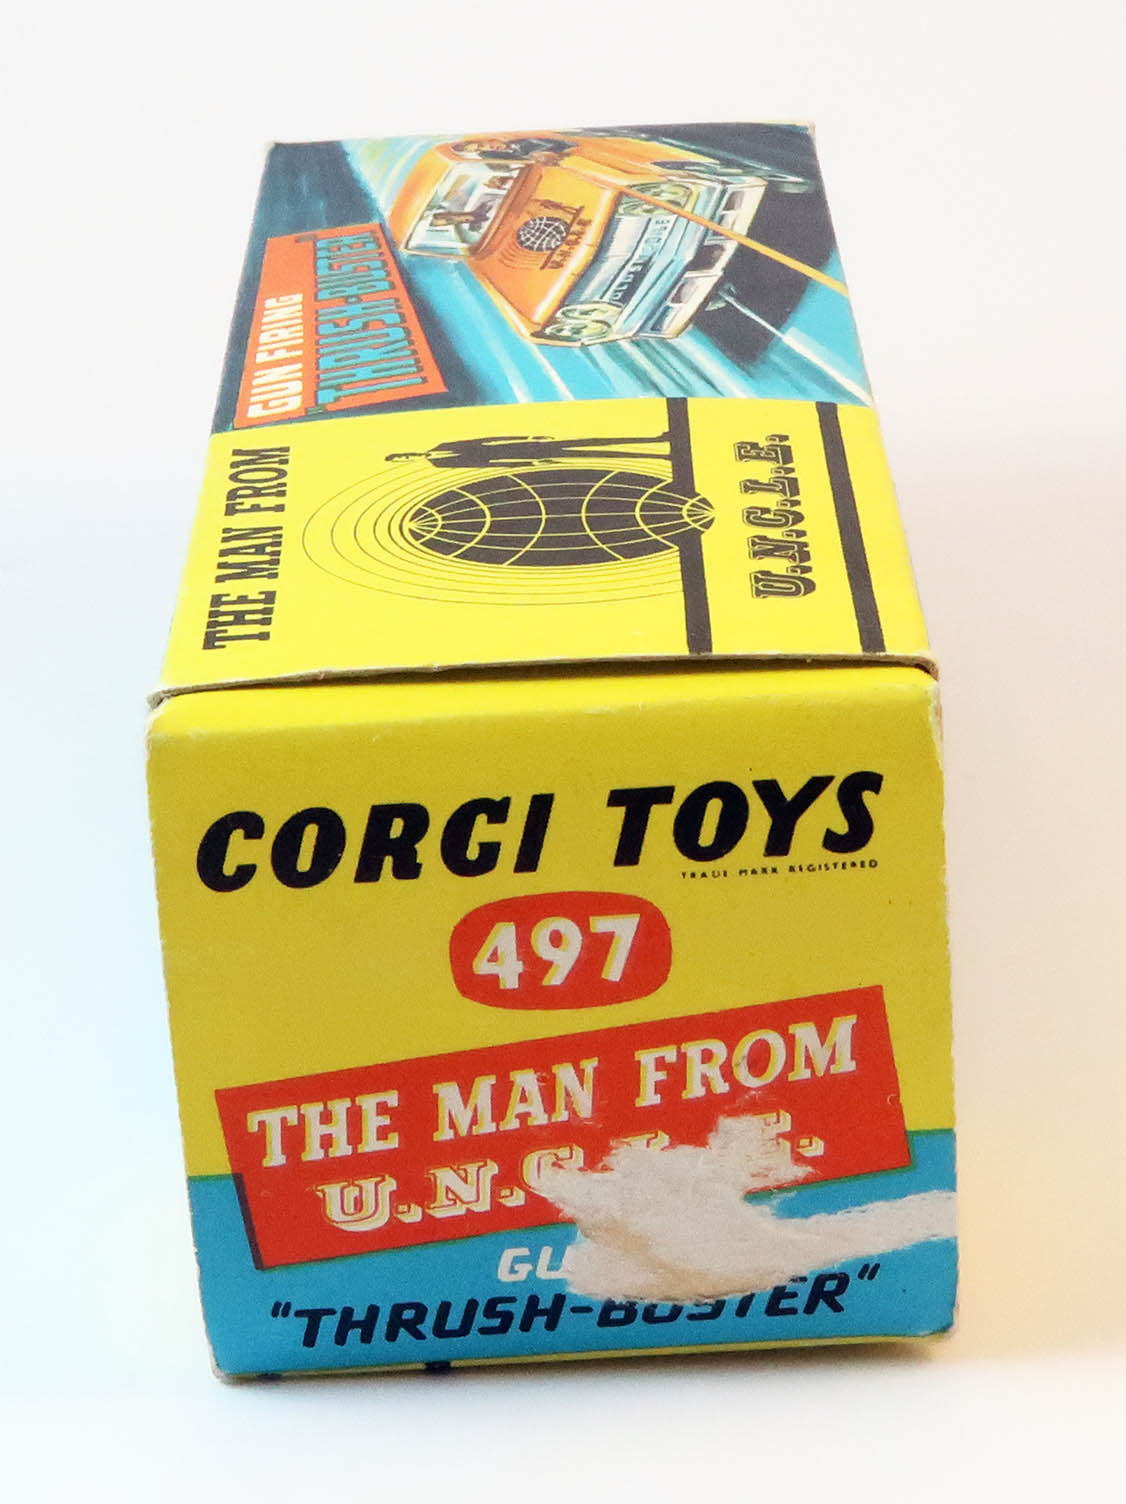 UNCLE Thrush-Buster CORGI Toys 1966